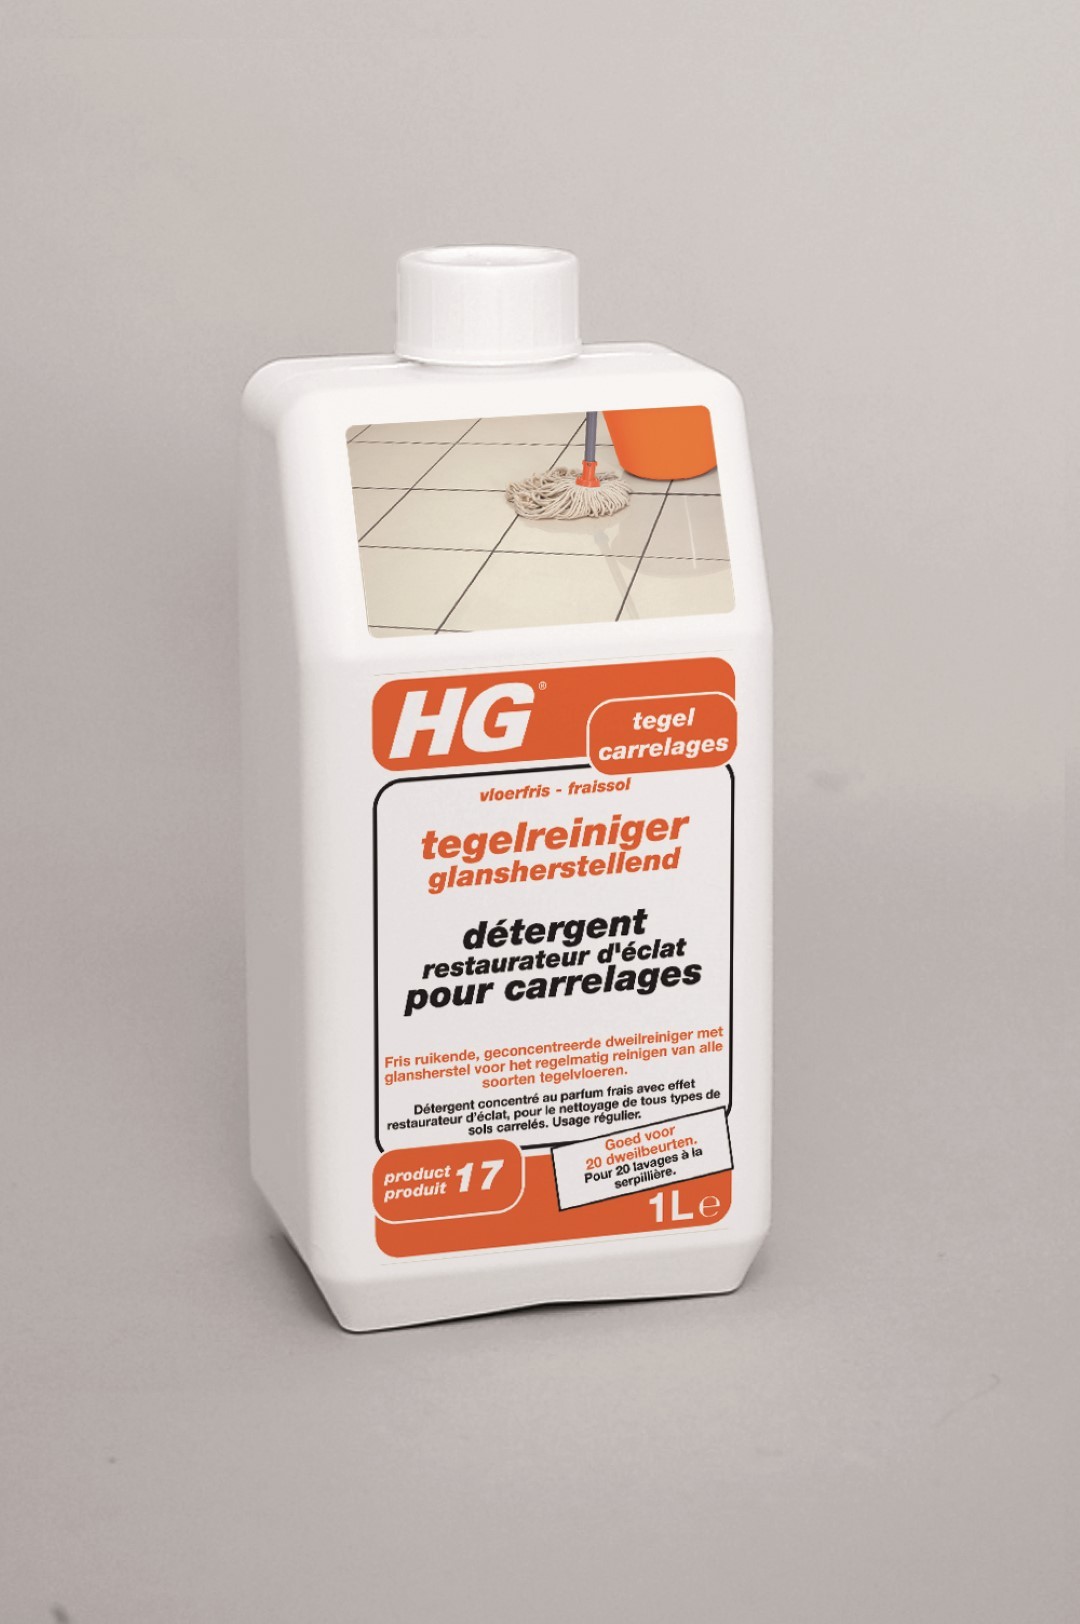 tegelreiniger glansherstellend (vloerfris) (HG product 17)